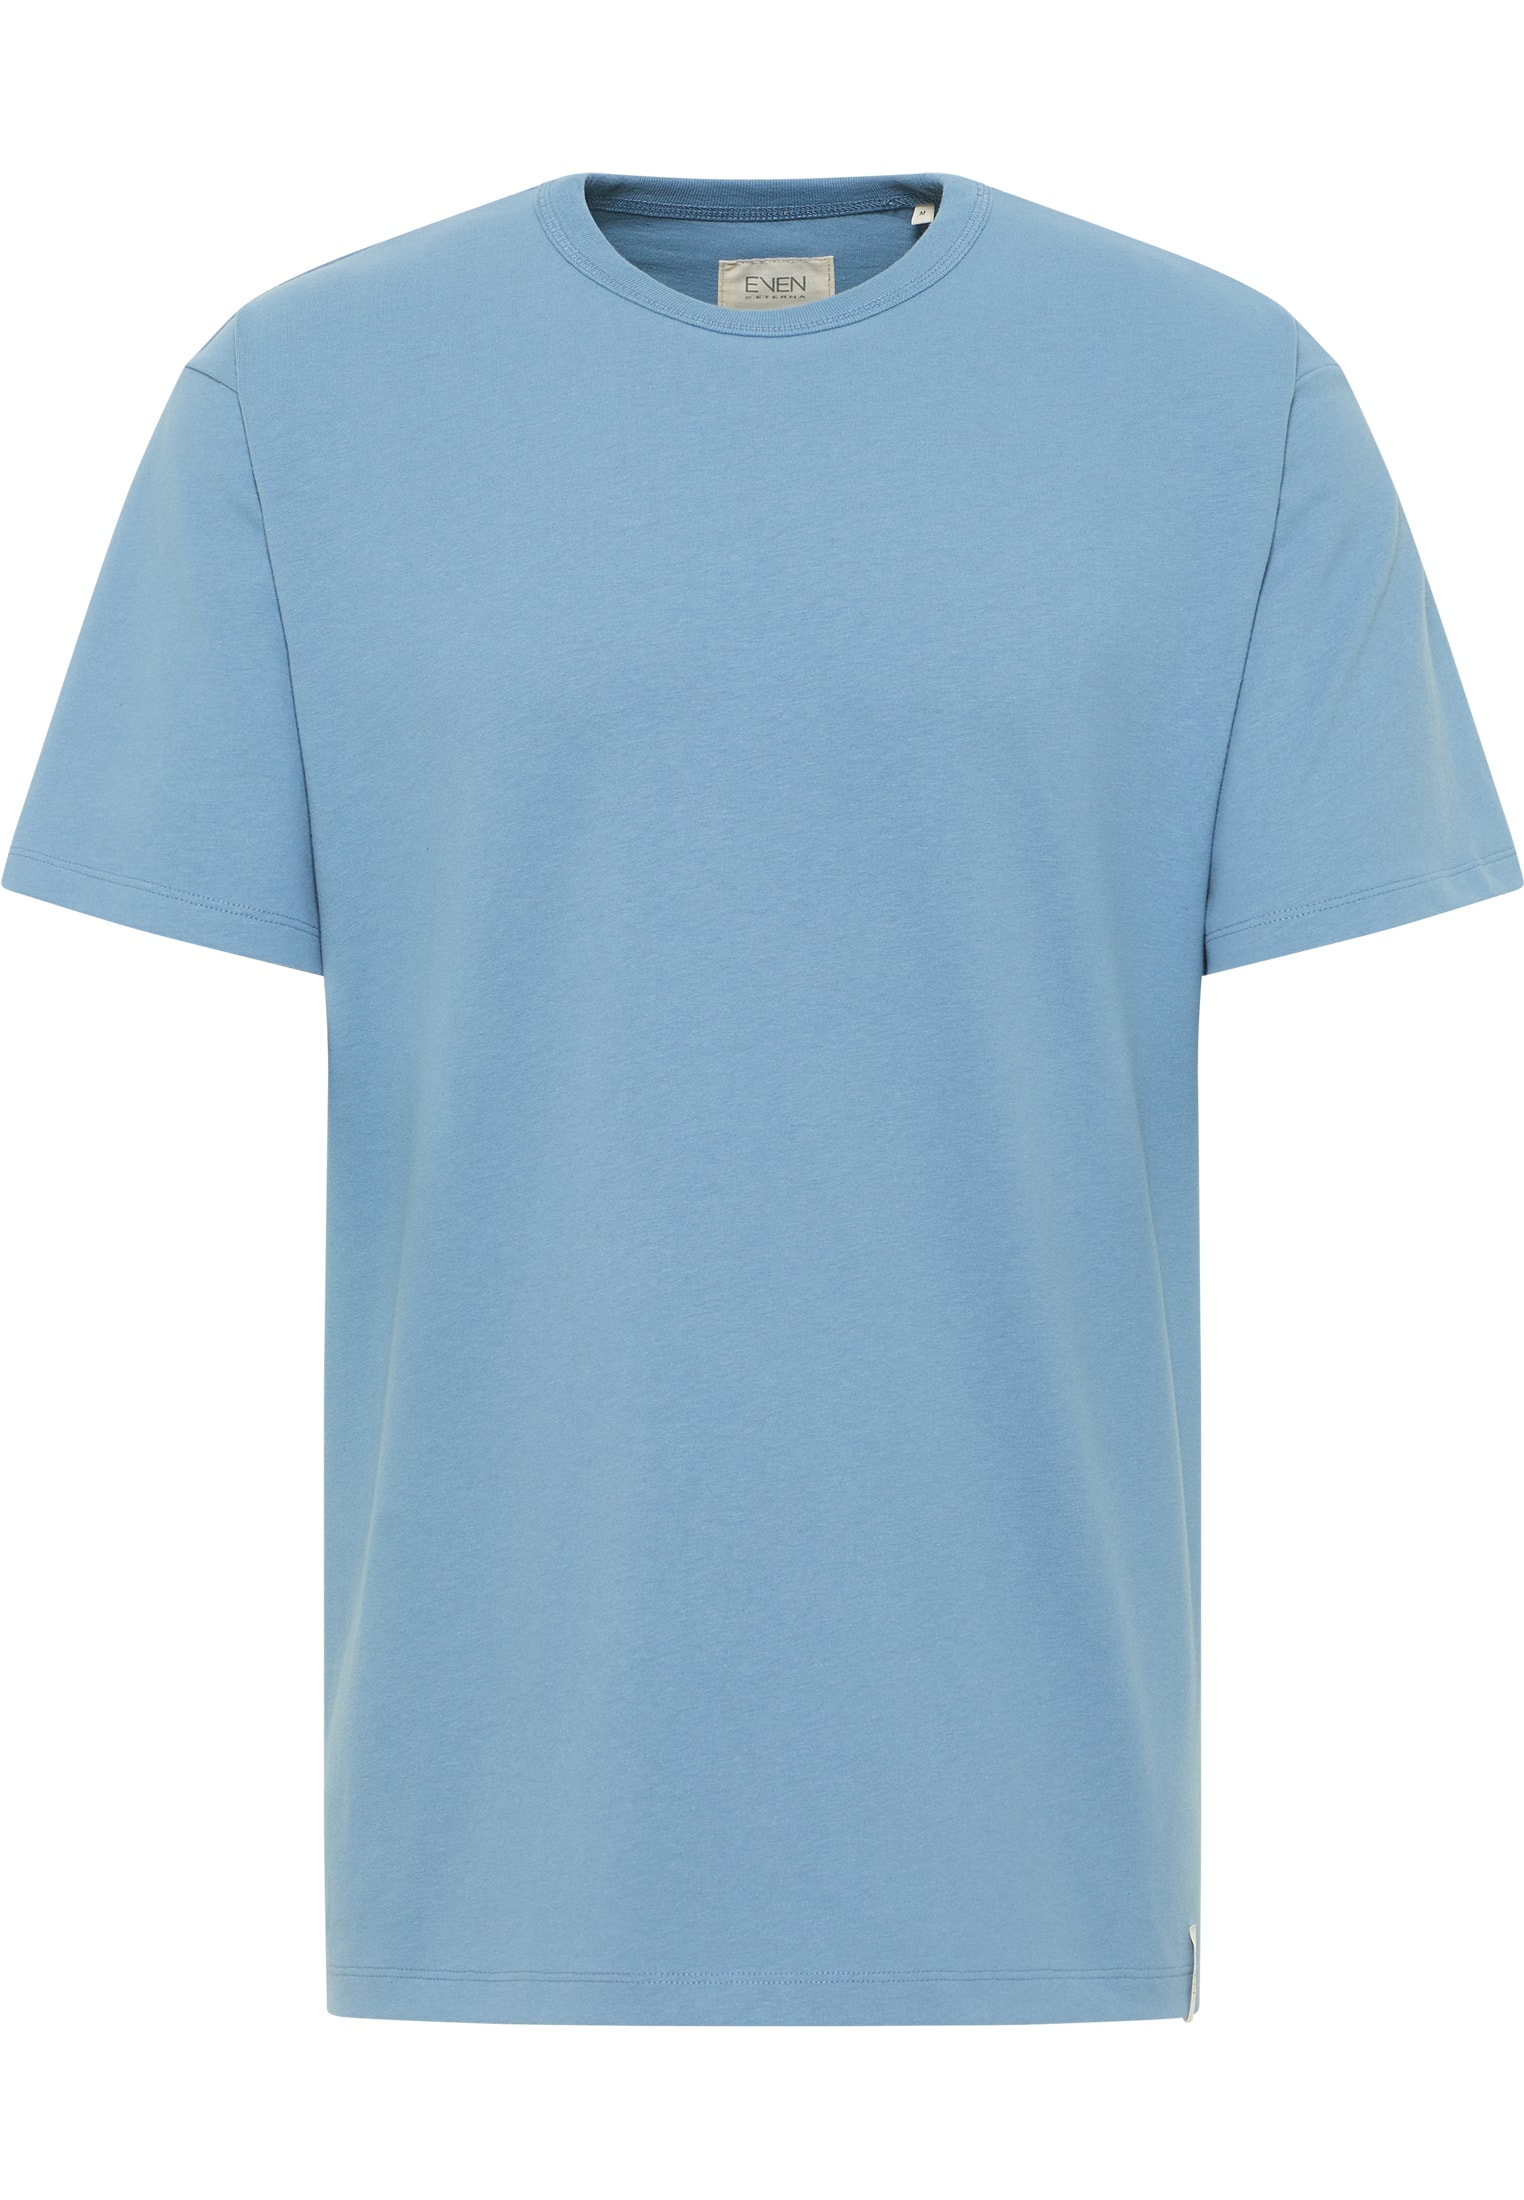 Shirt in blue plain